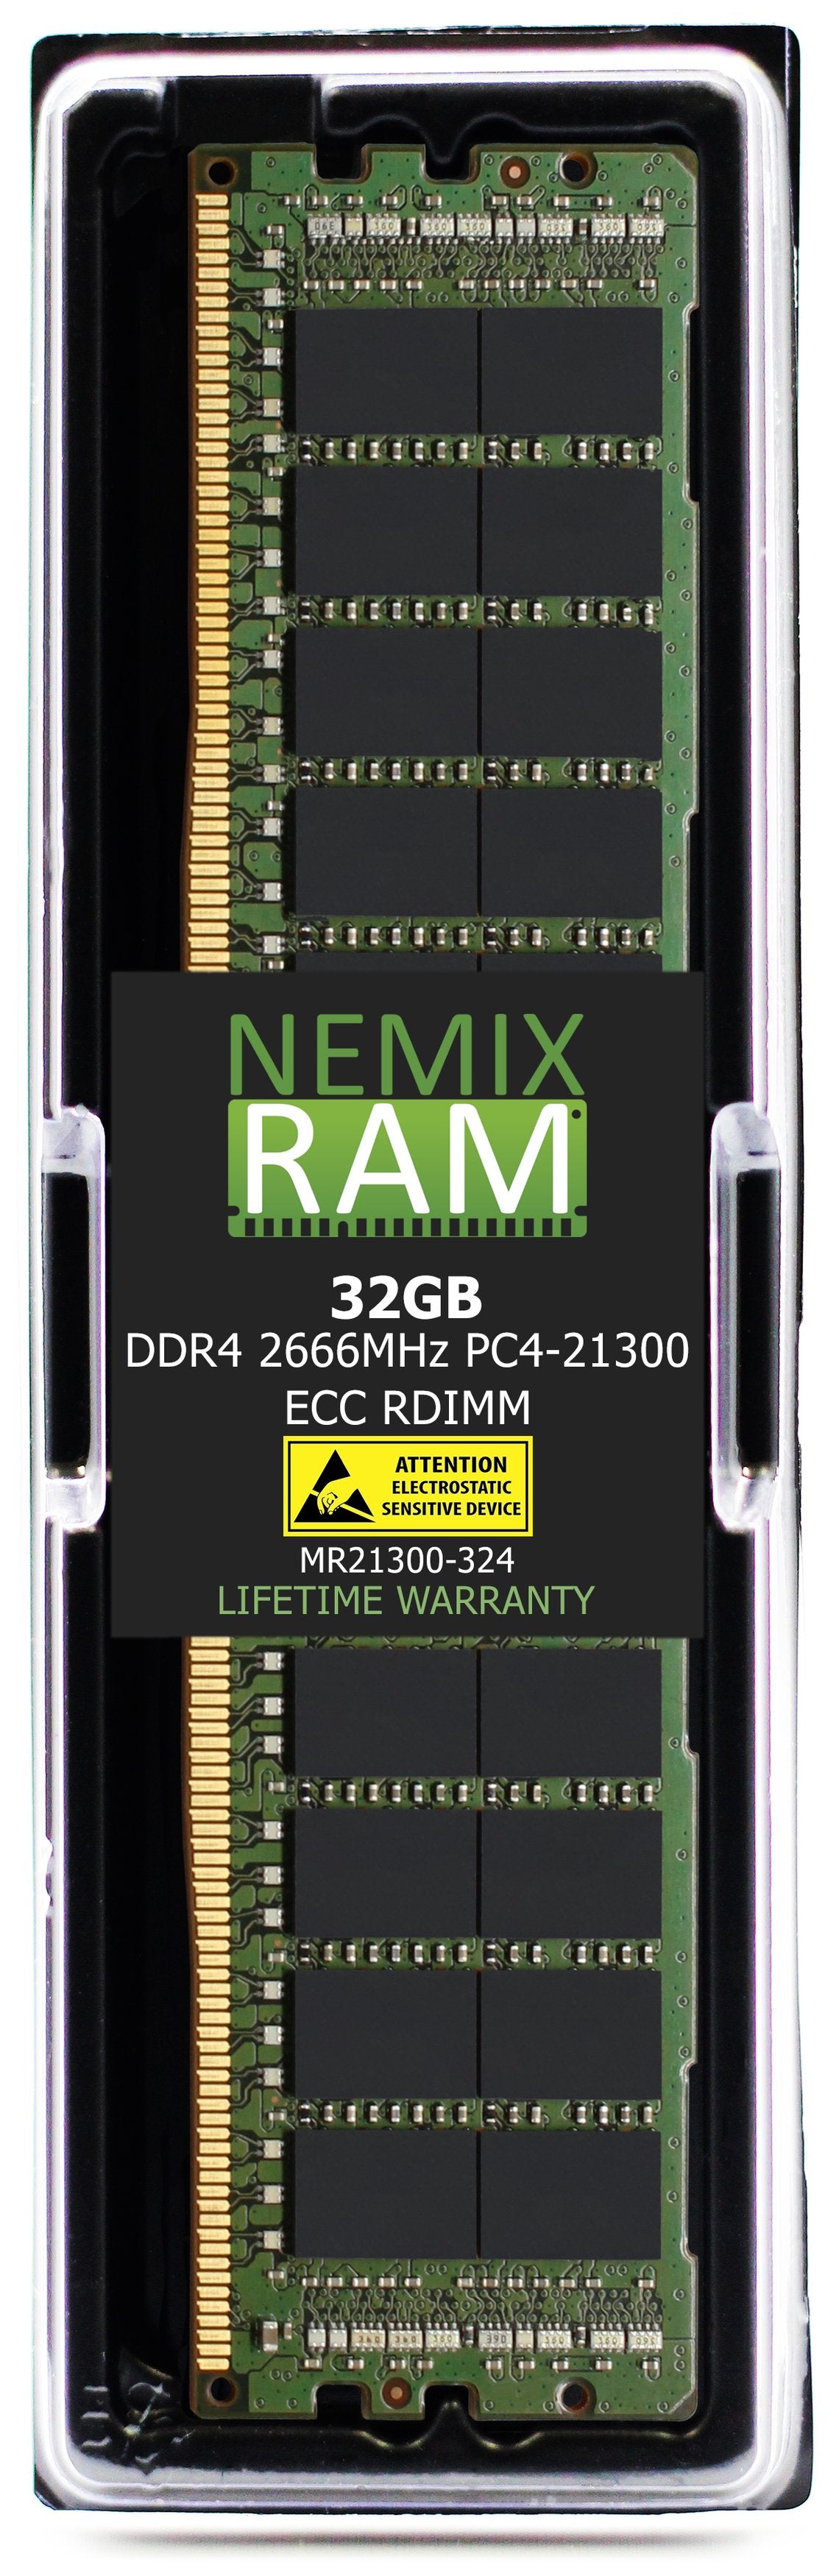 Hynix HMA84GR7MFR4N-VK 32GB DDR4 2666MHZ PC4-21300 RDIMM Compatible Memory Module